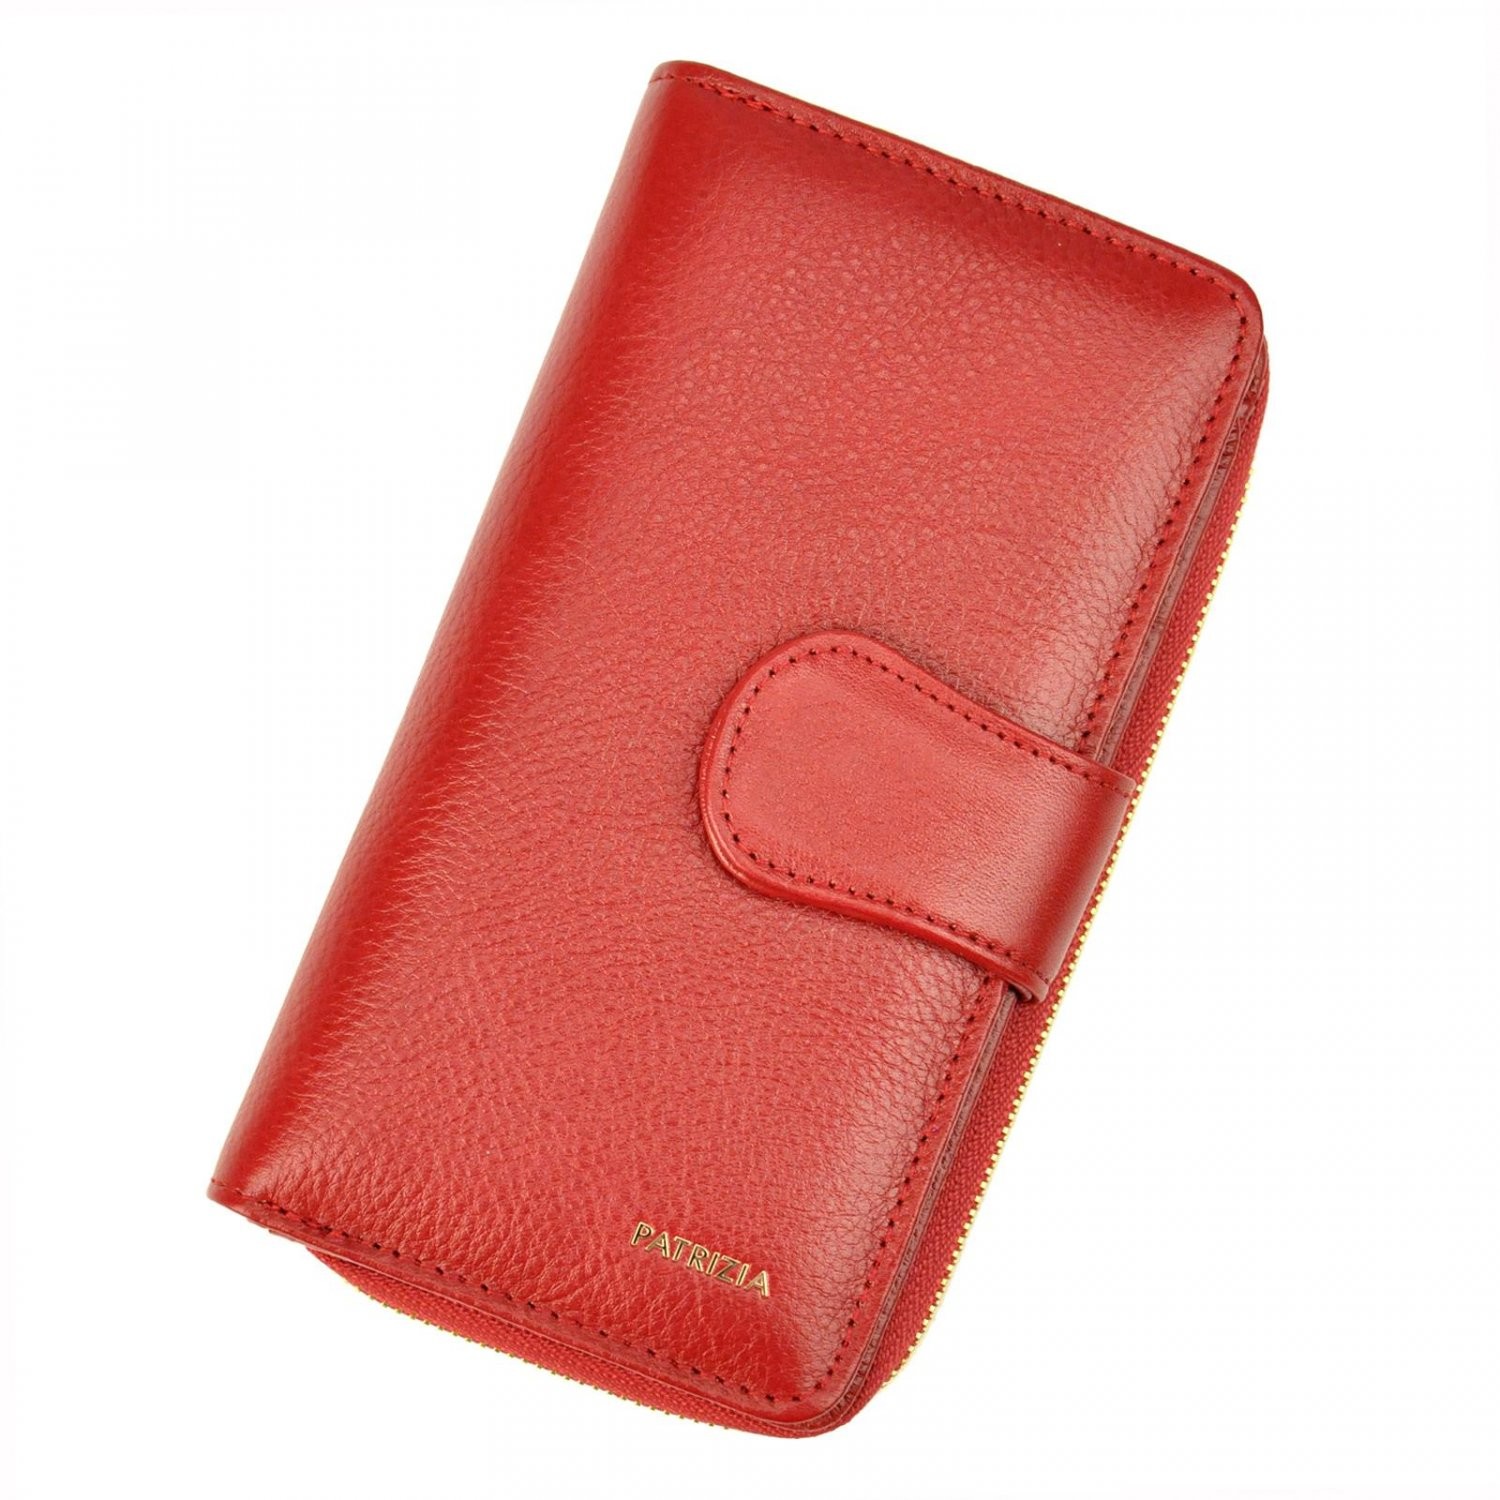 Dámská kožená peněženka červená - Patrizia Clorinda červená